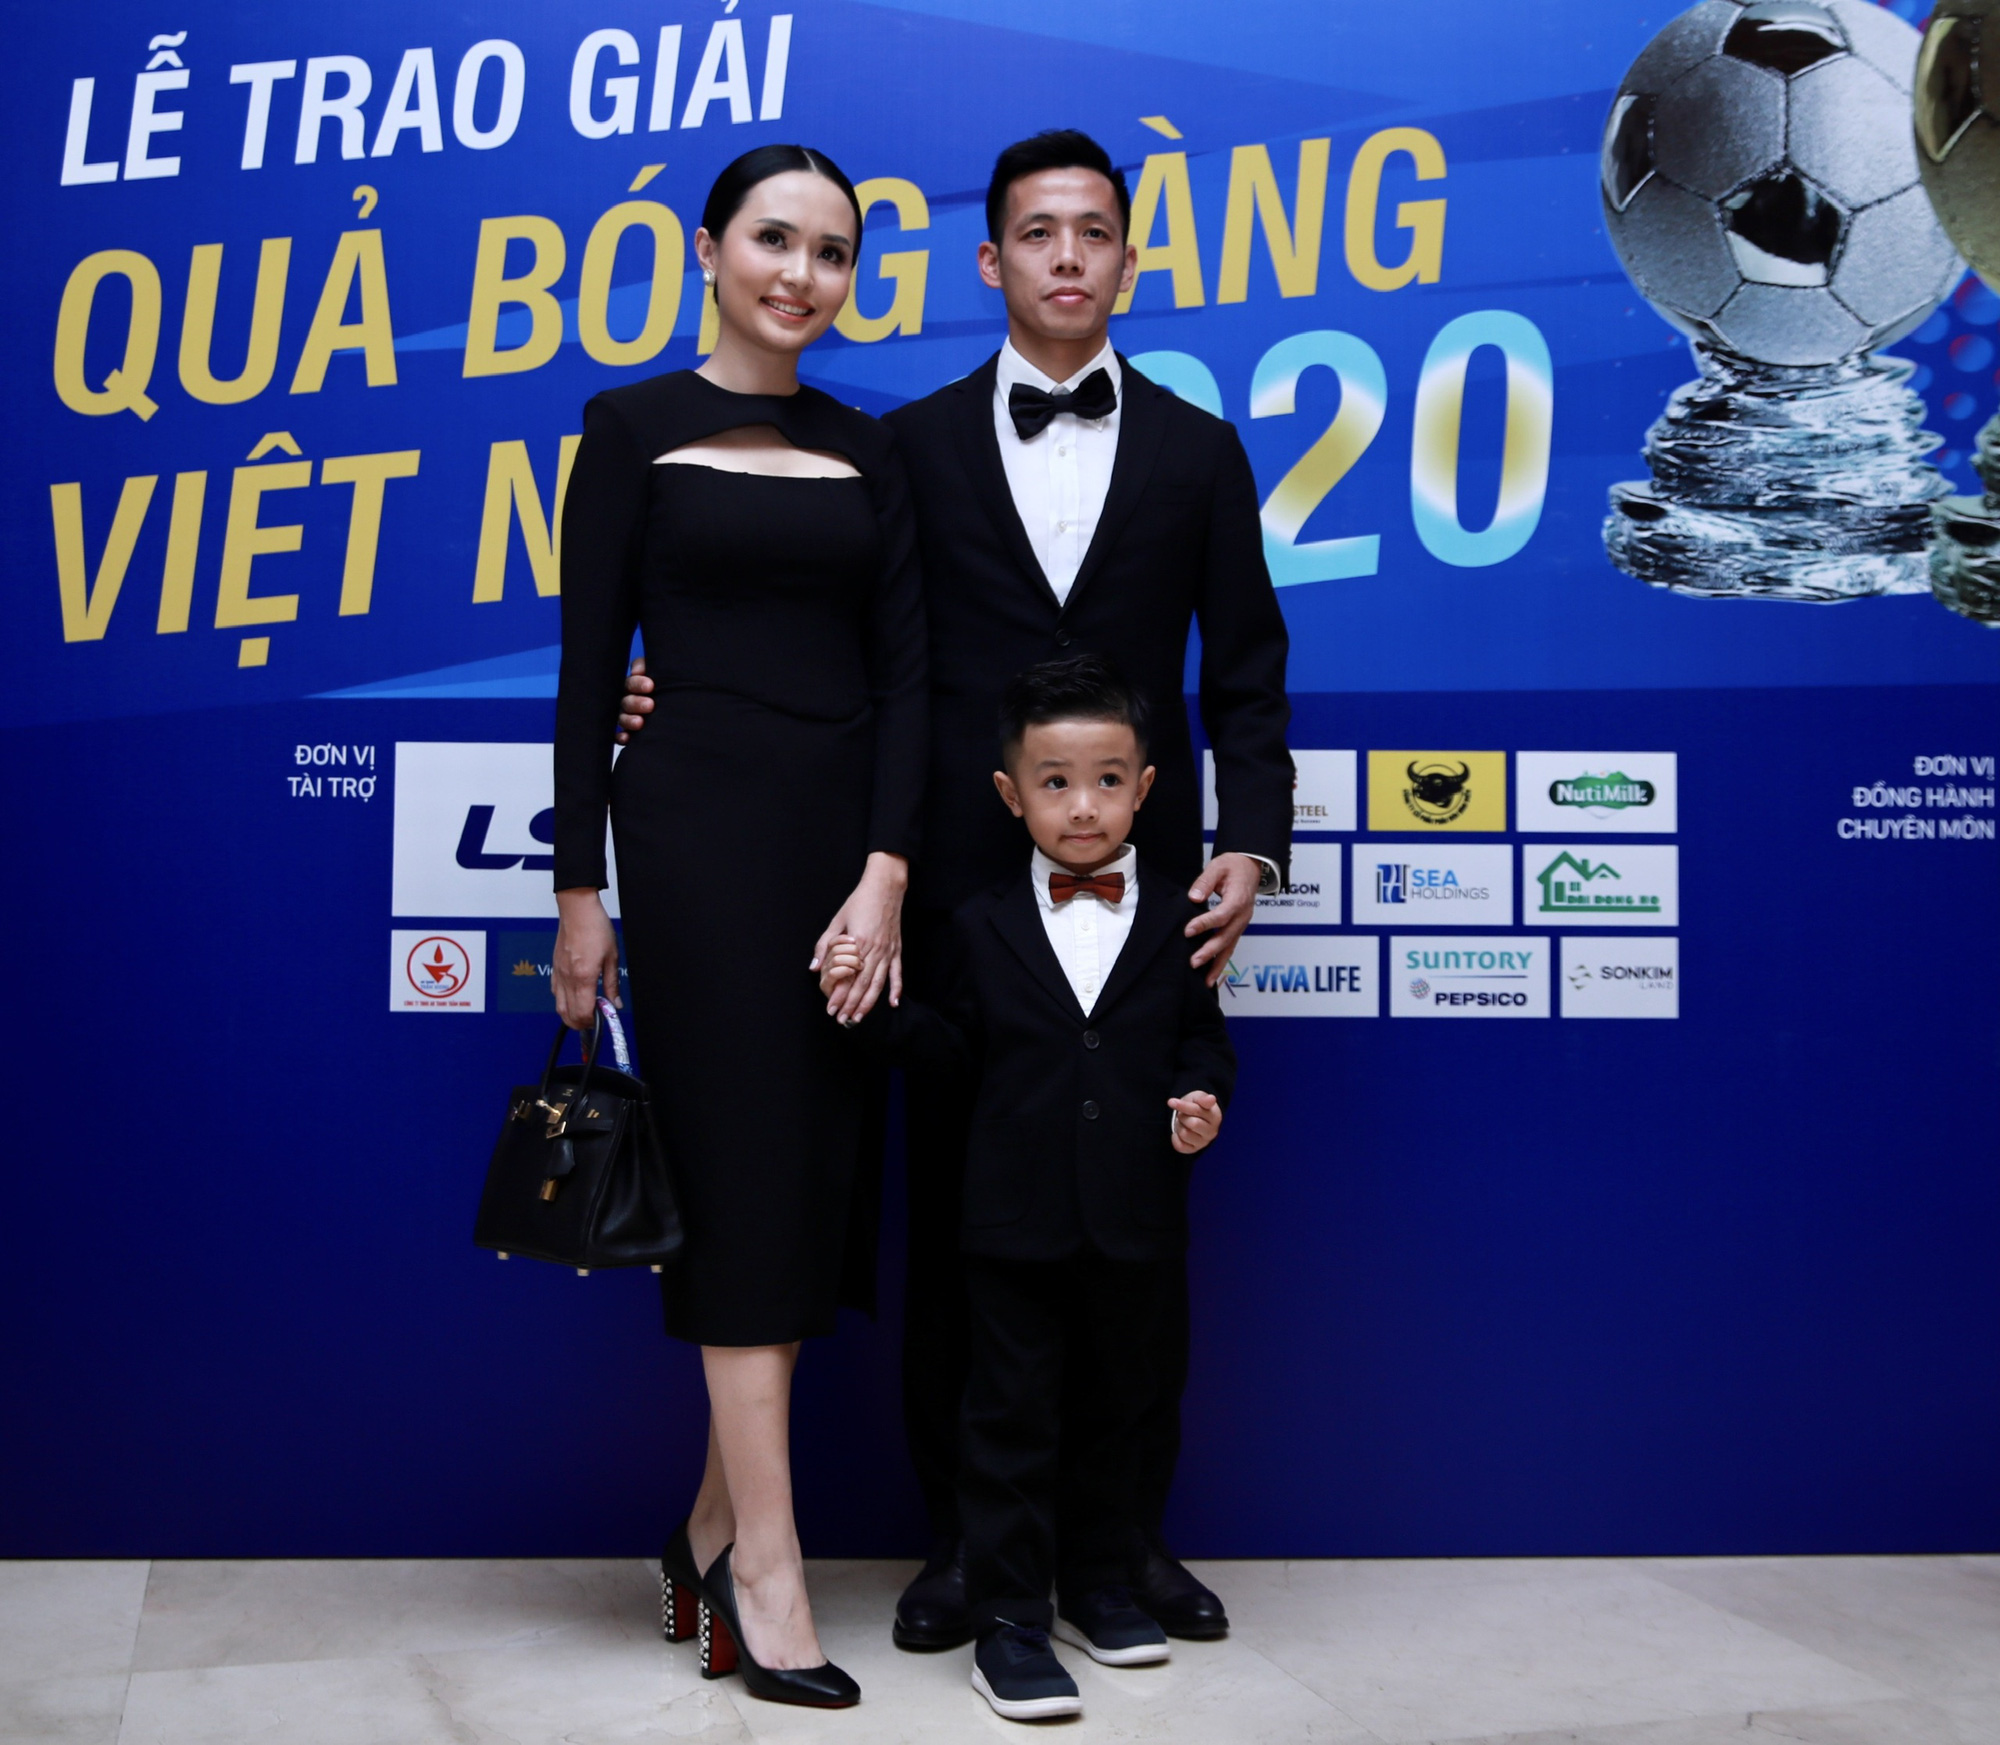 Cầu thủ trẻ Bùi Hoàng Việt Anh được vinh danh - Ảnh 5.